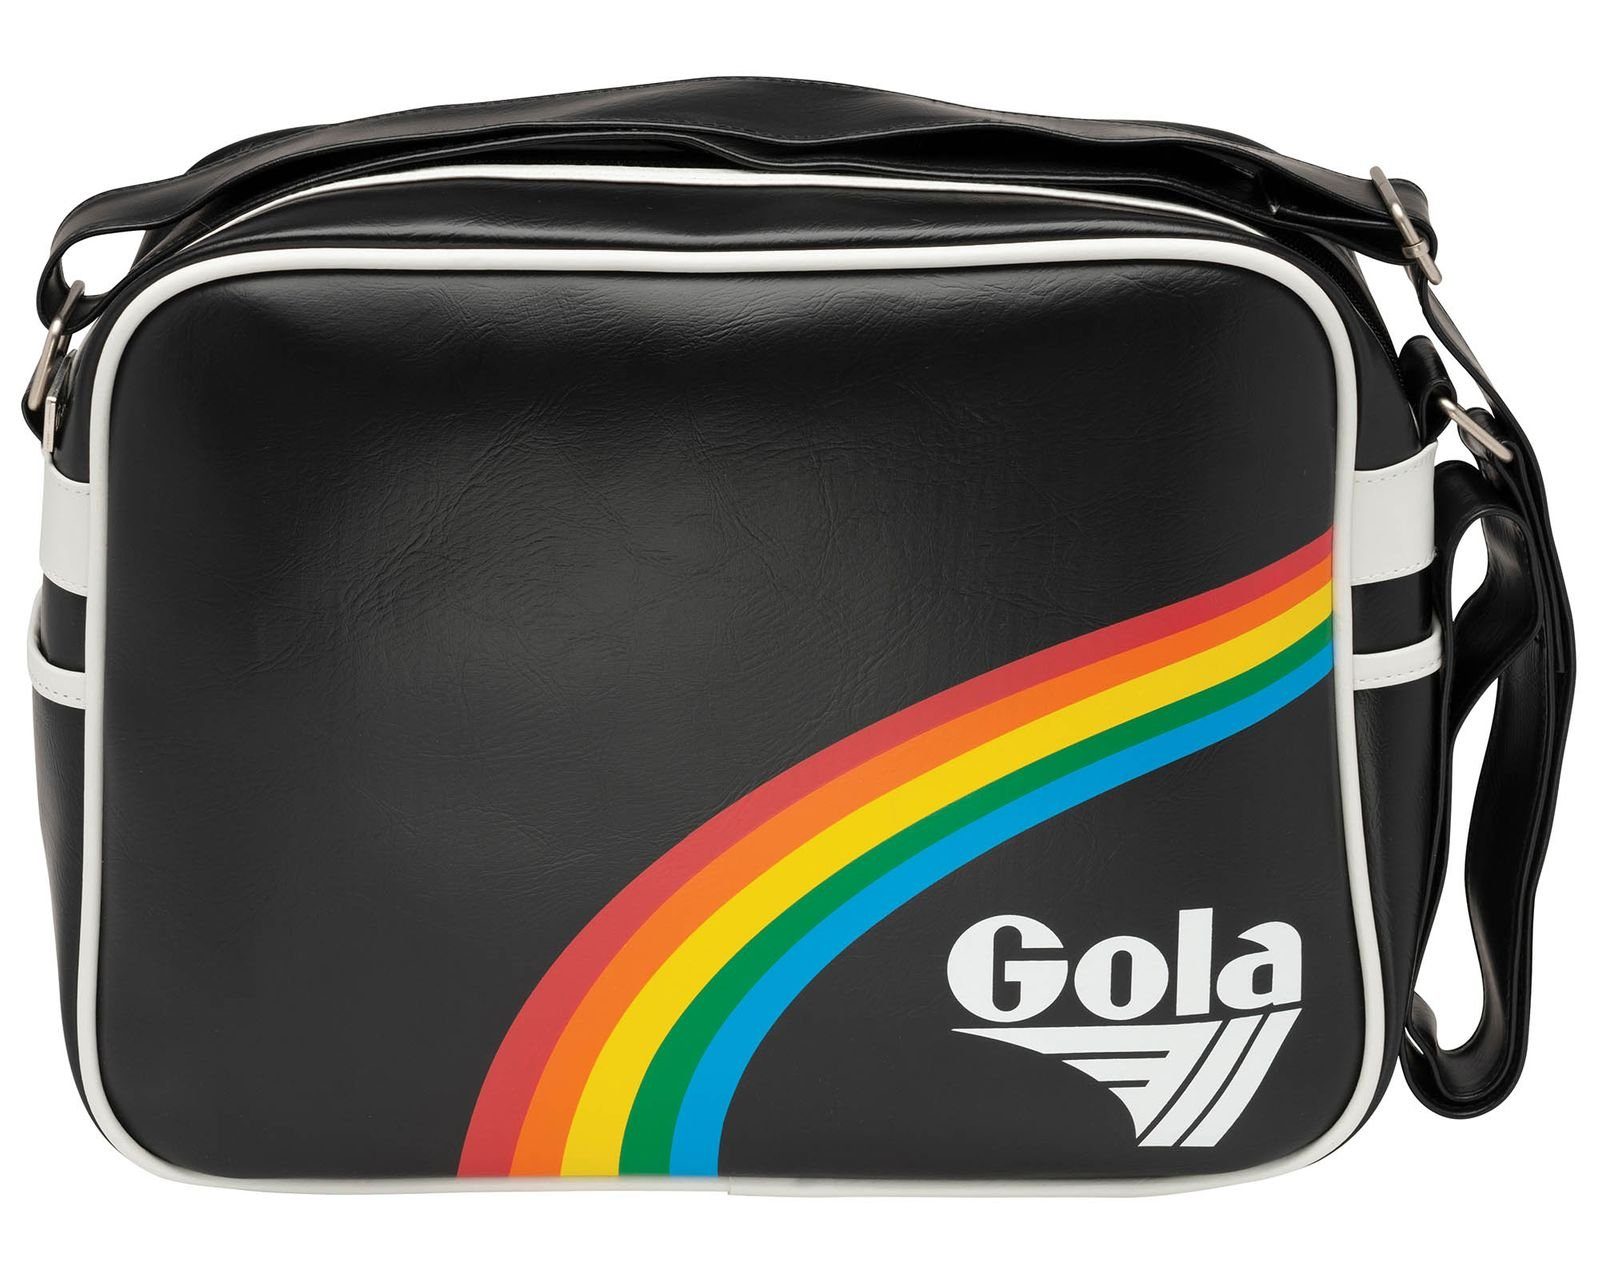 Gola Taschen online kaufen | OTTO